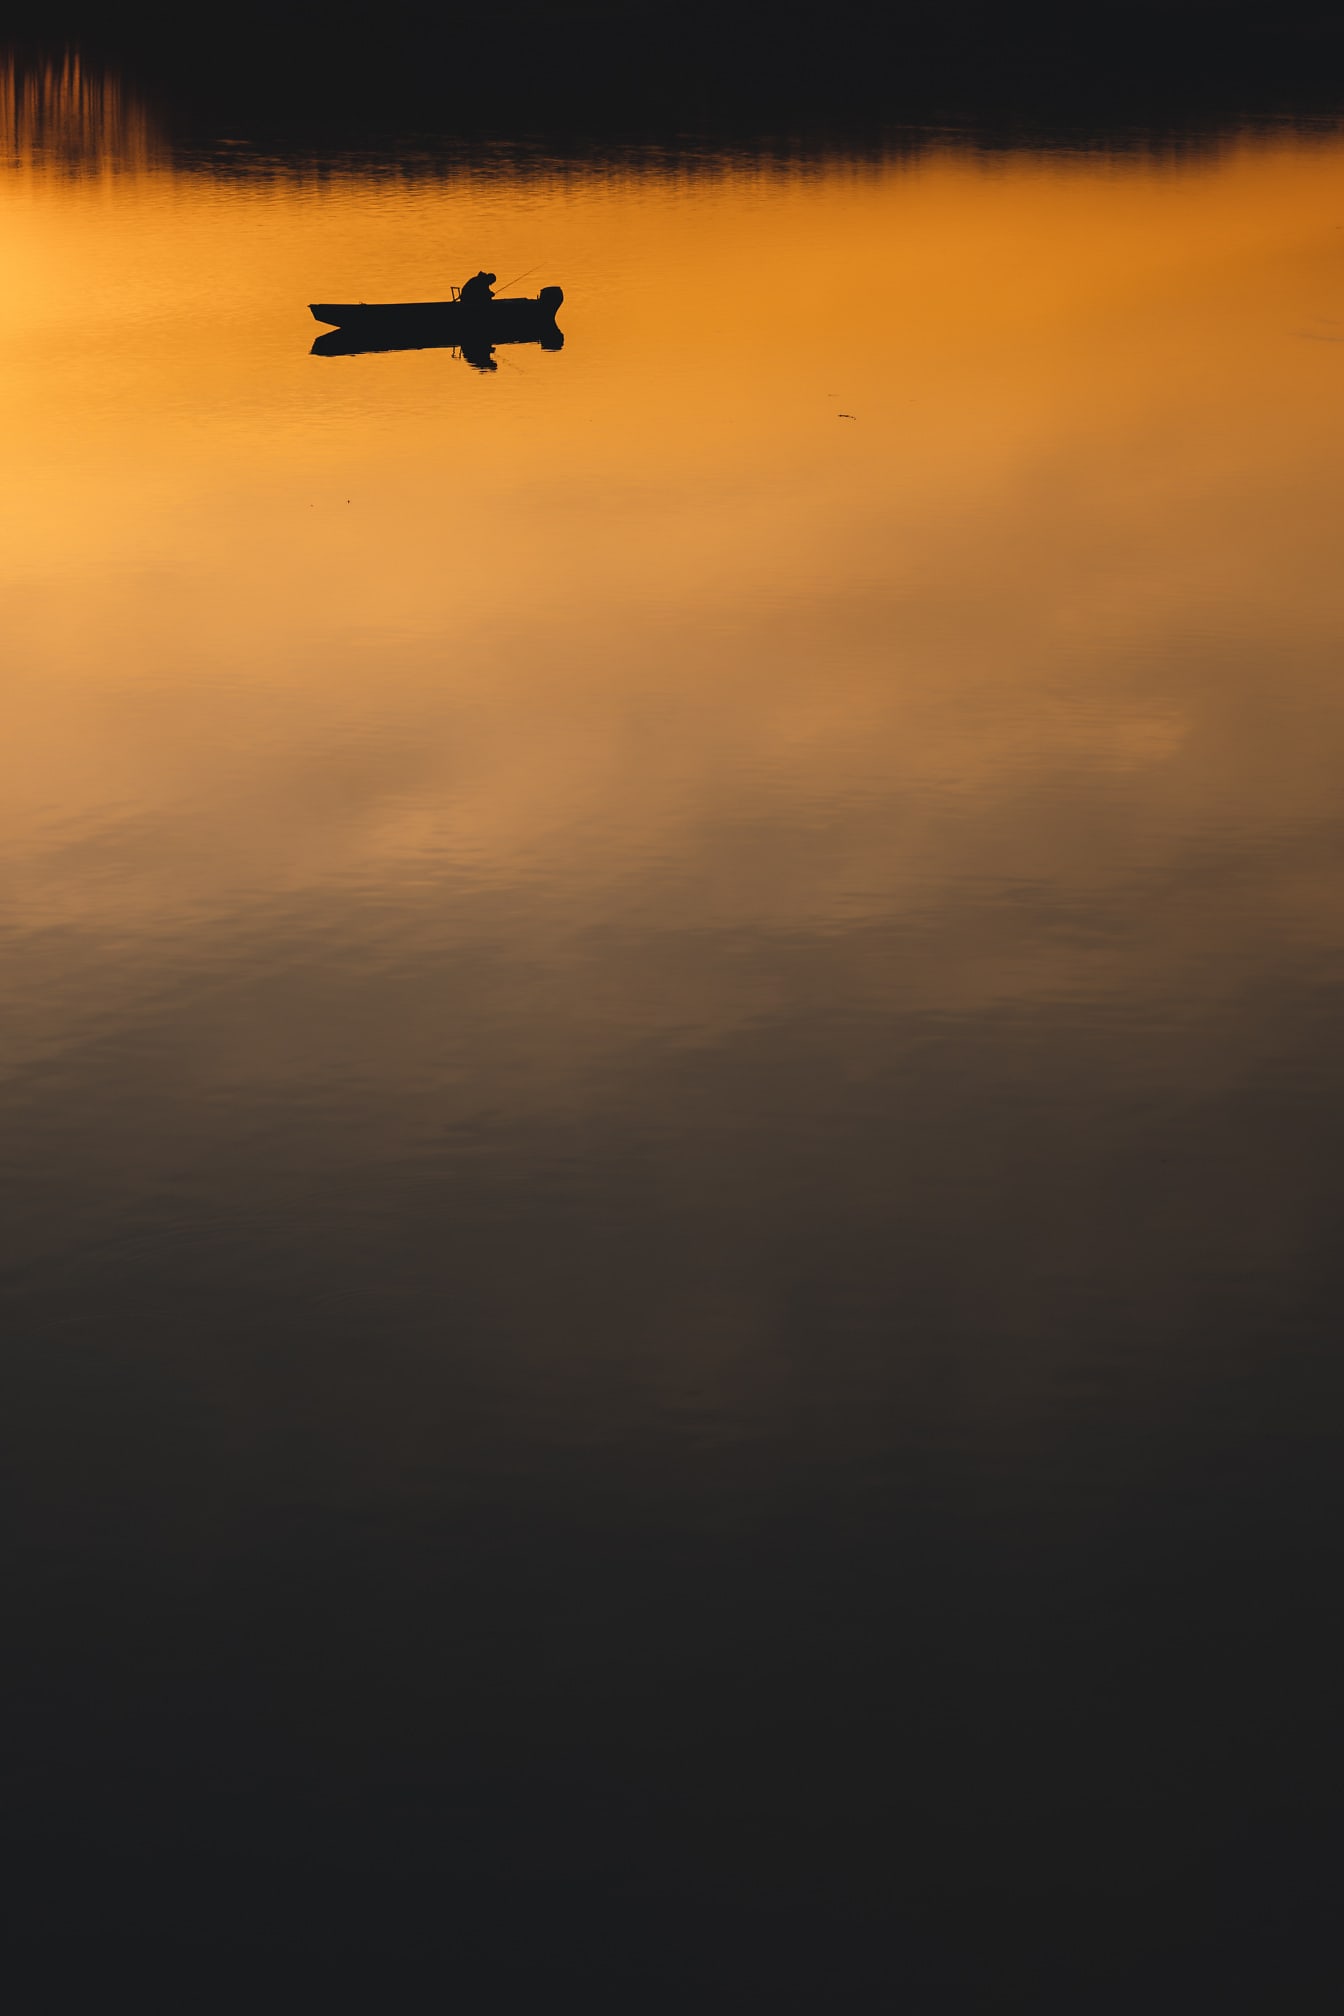 Silhuete rybára v rybárskej lodi na pokojnej vode pri východe slnka